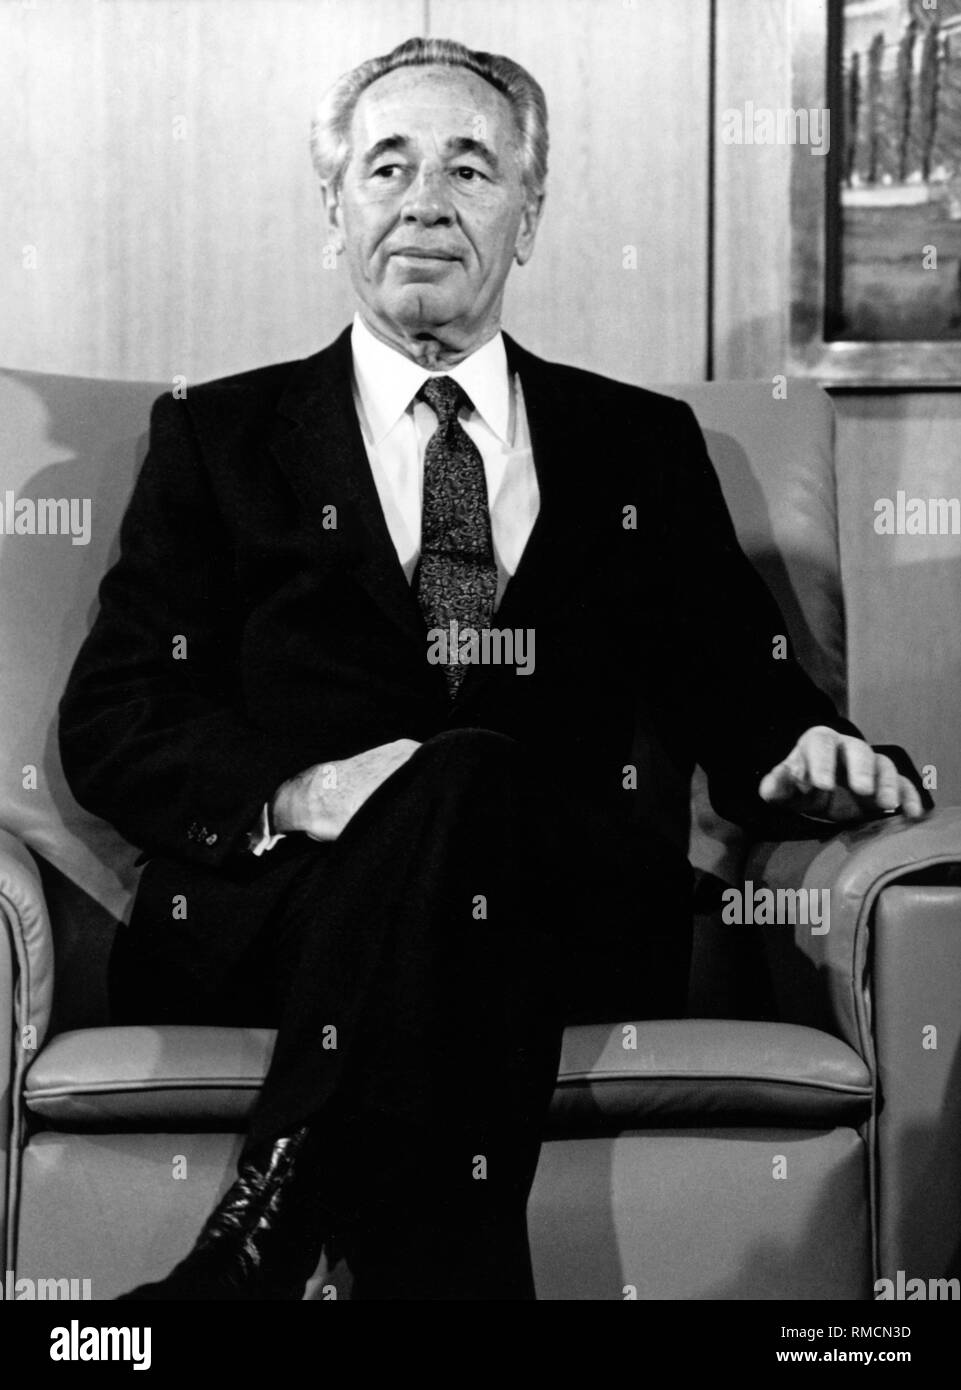 Shimon Peres en tant que Premier Ministre d'Israël. Peres a occupé ce poste de 1984 à 1986 et de 1995 à 1996. Banque D'Images